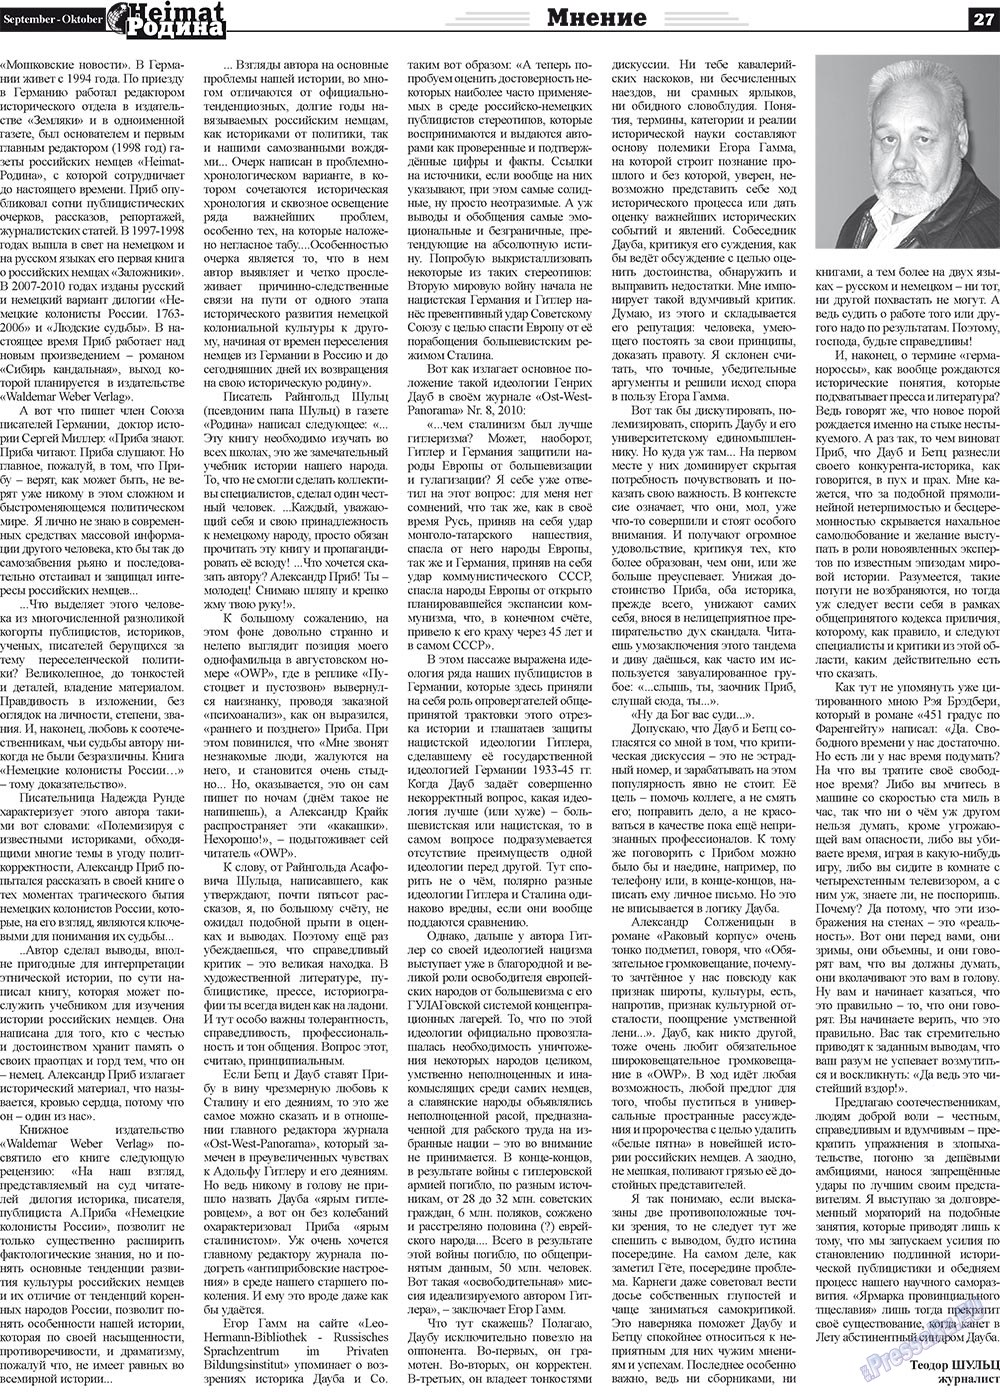 Heimat-Родина (газета). 2011 год, номер 9, стр. 27